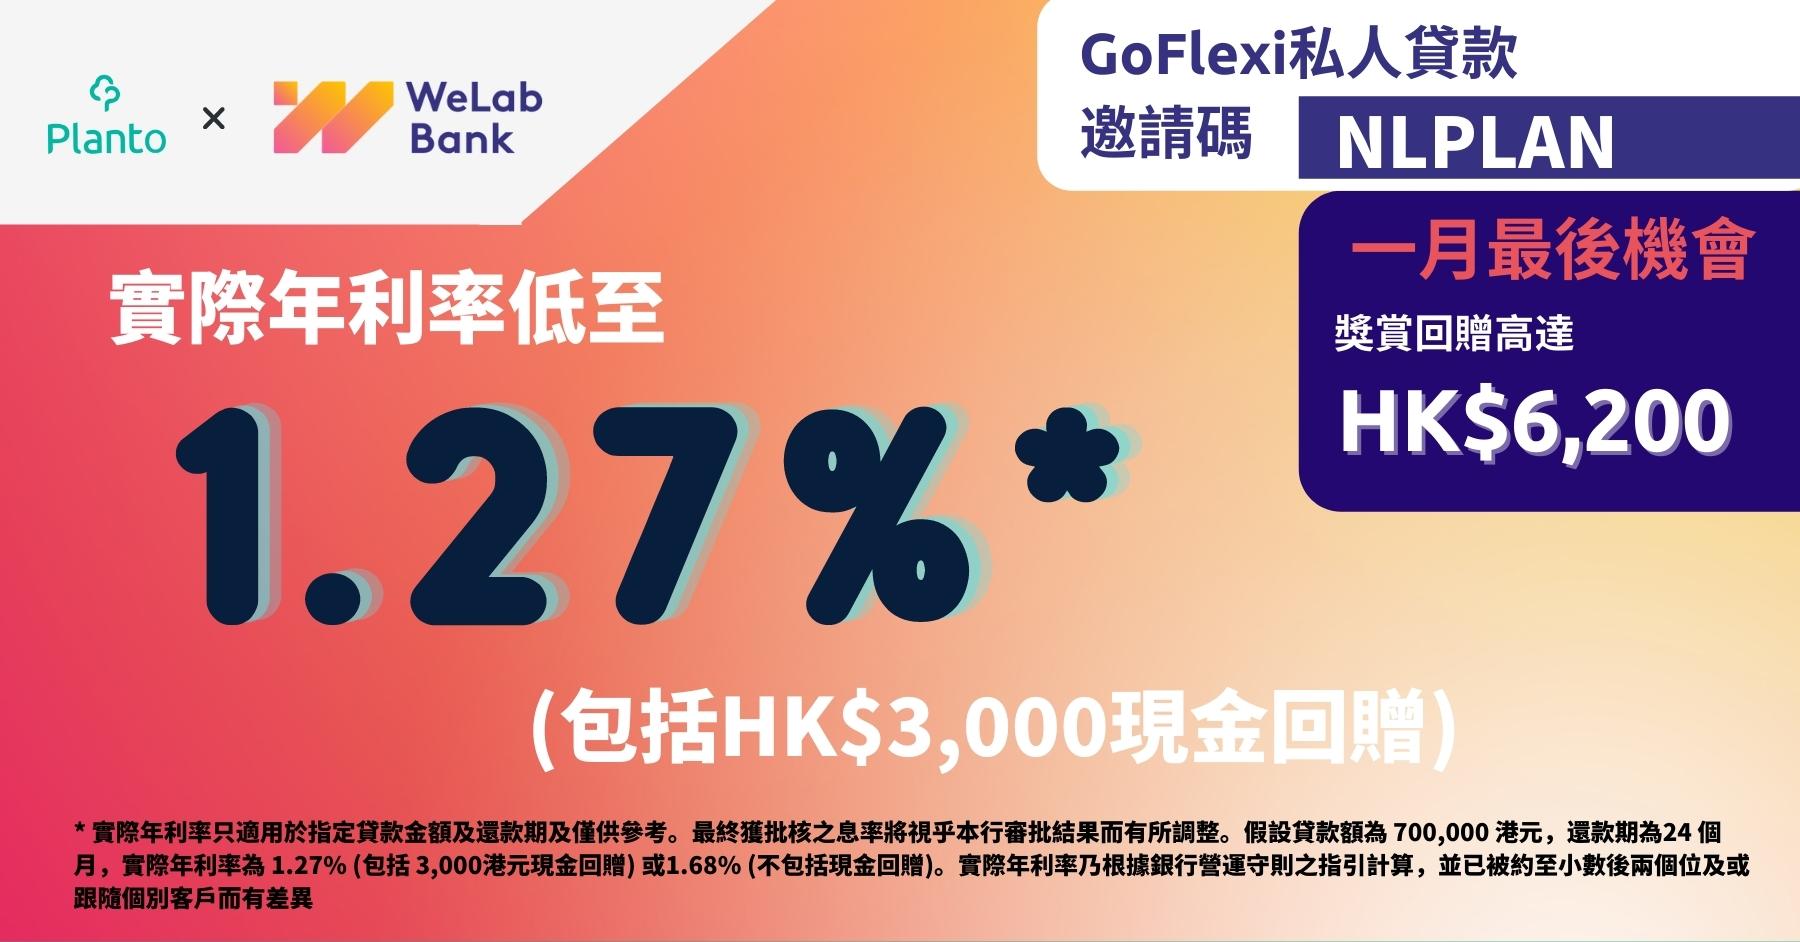 稅季借WeLab Bank私人貸款〡實際年利率低至1.27%* 包括HK$3,000現金回贈 (1.68% 不包括現金回贈)〡獎賞回贈高達 HK$6,200 〡WeLab Bank GoFlexi私人貸款賣點速睇